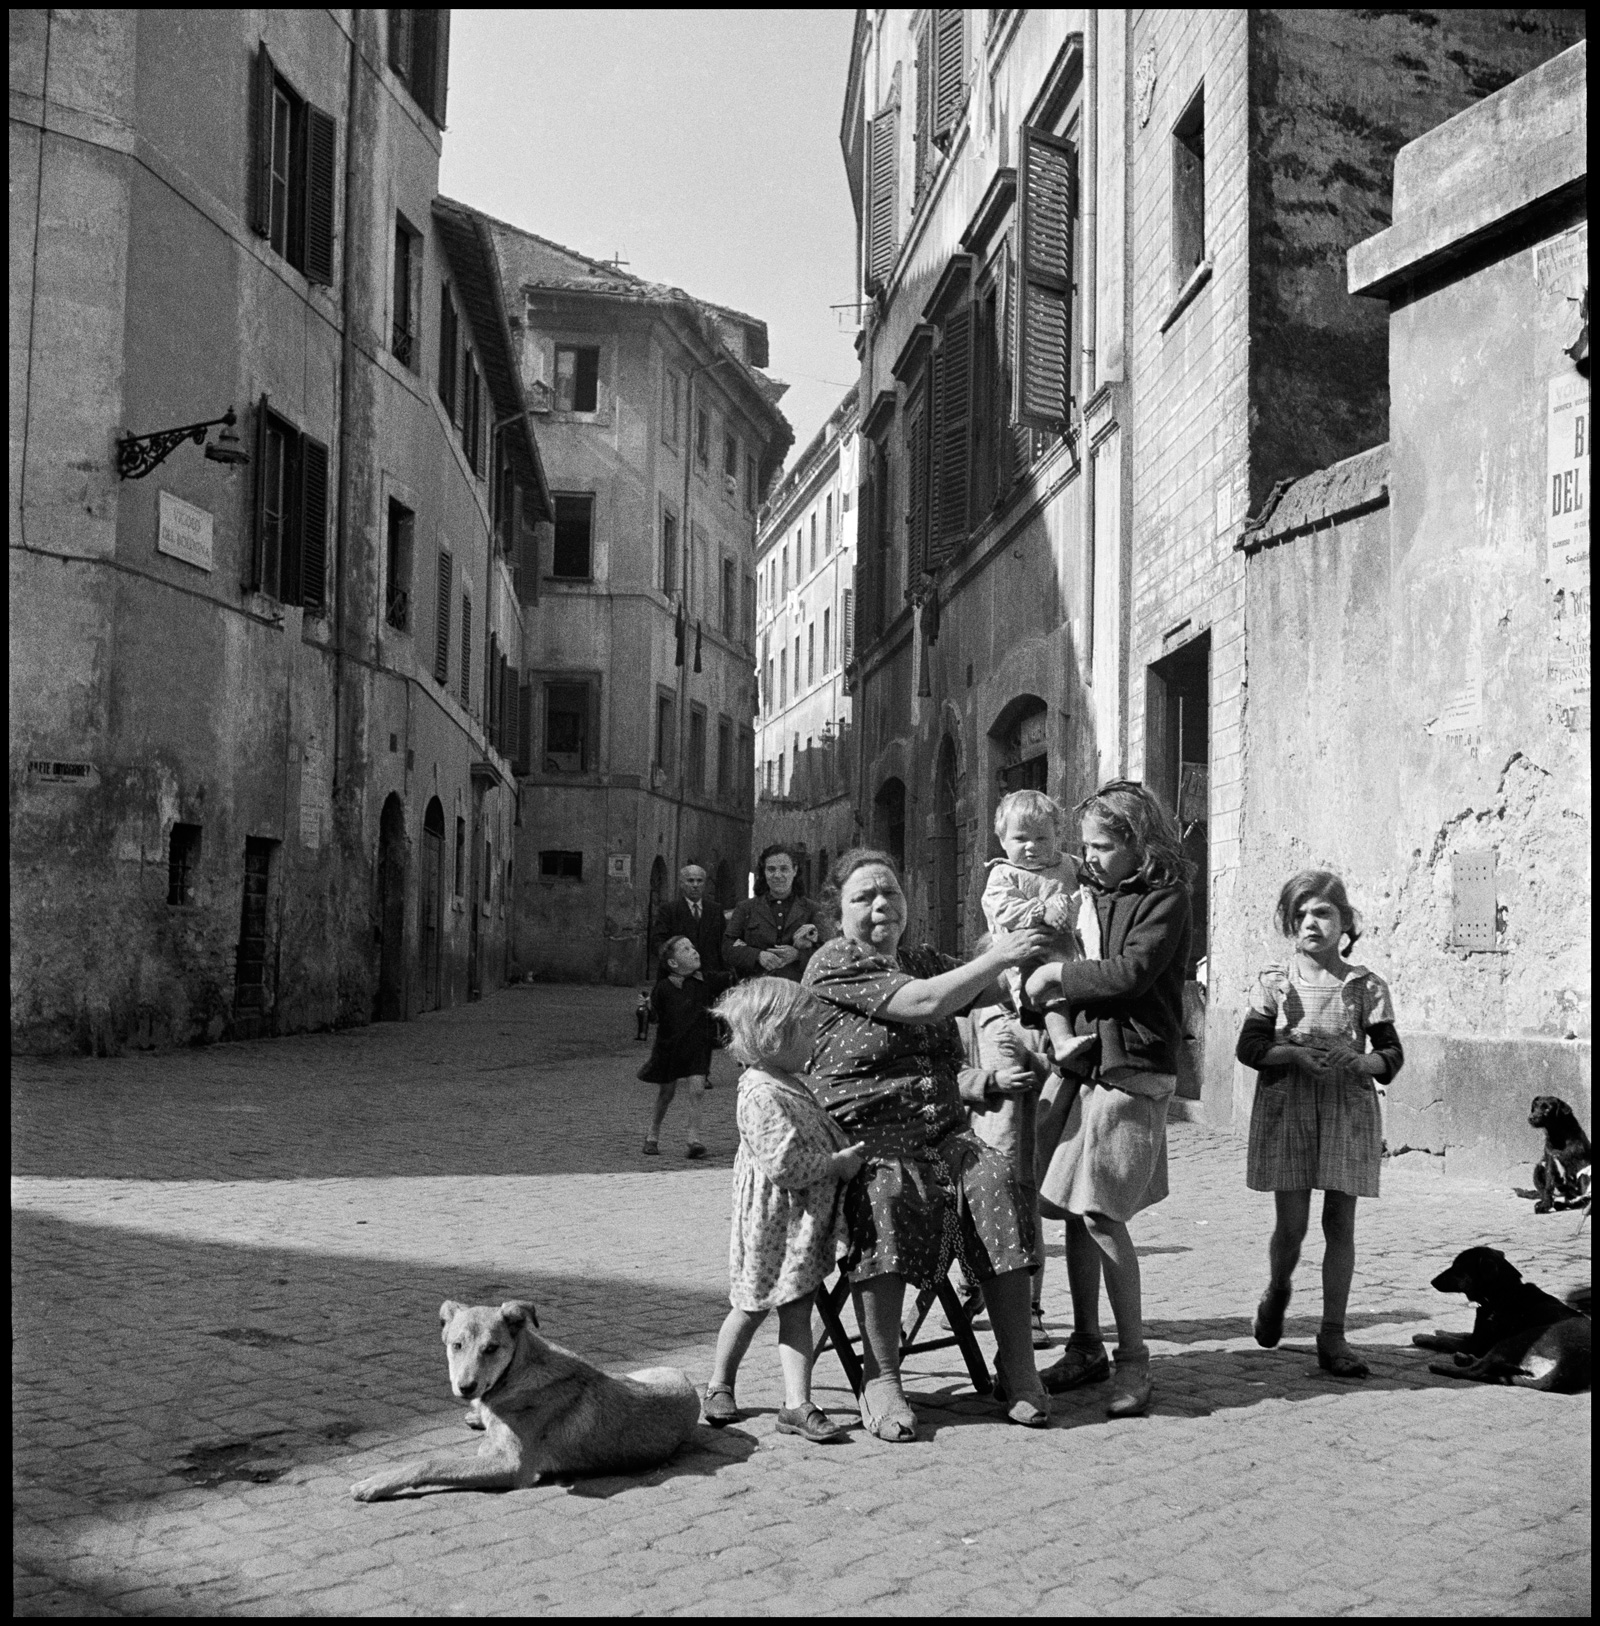 Naples, Italy, 1948